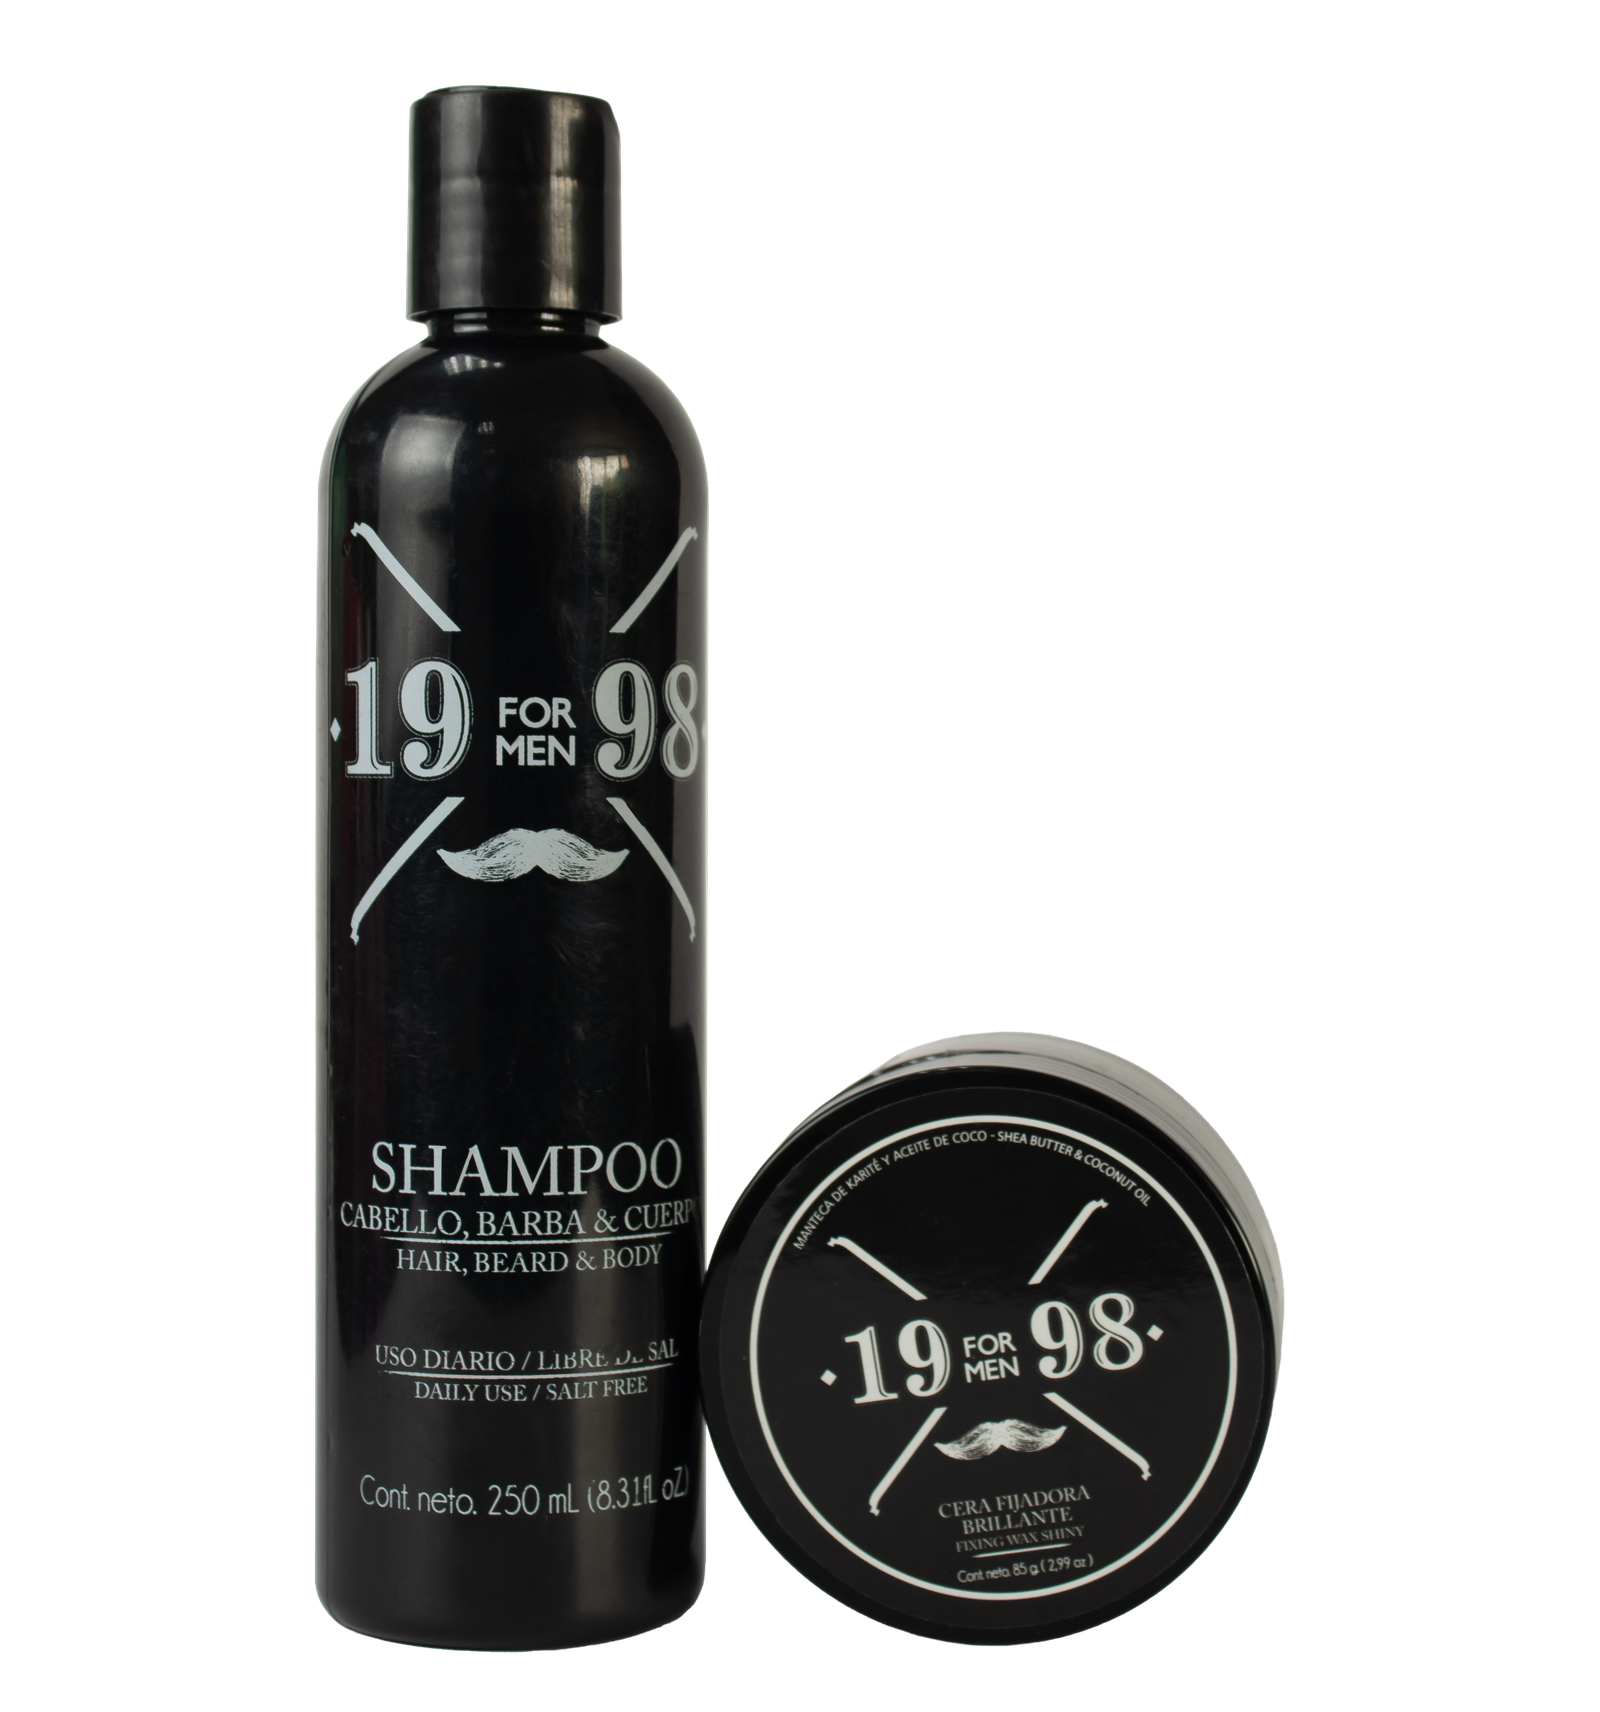 Shampoo 19 98 + Cera Brillante 19 98